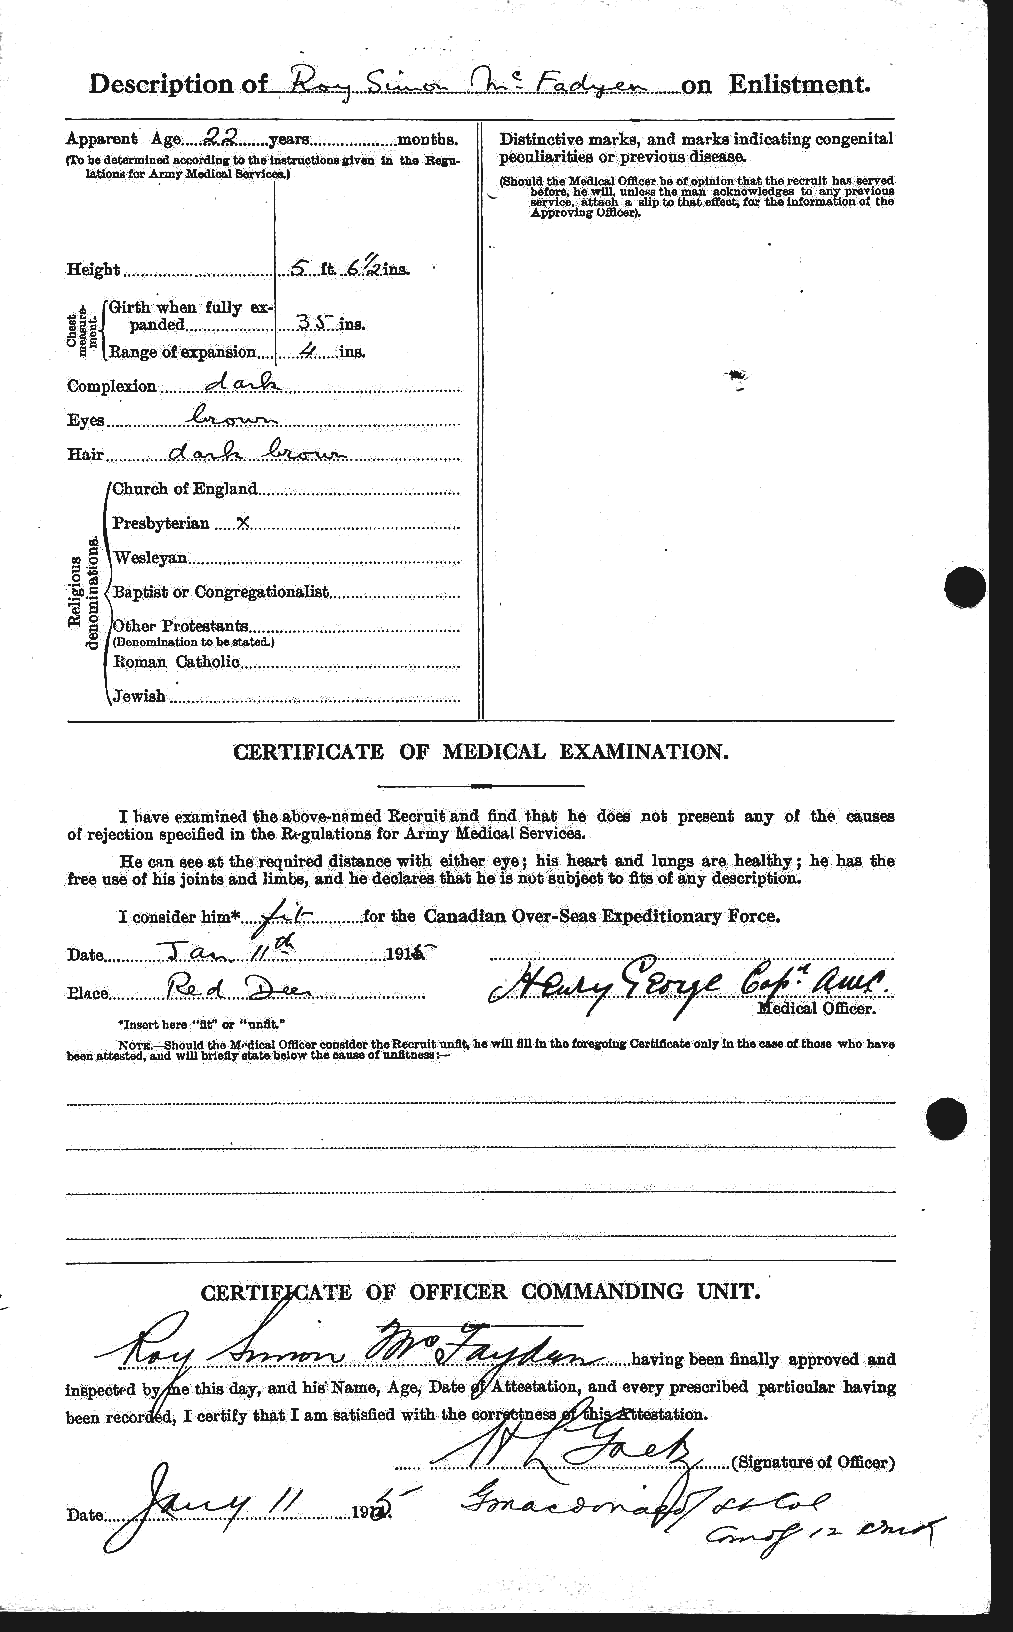 Dossiers du Personnel de la Première Guerre mondiale - CEC 521214b